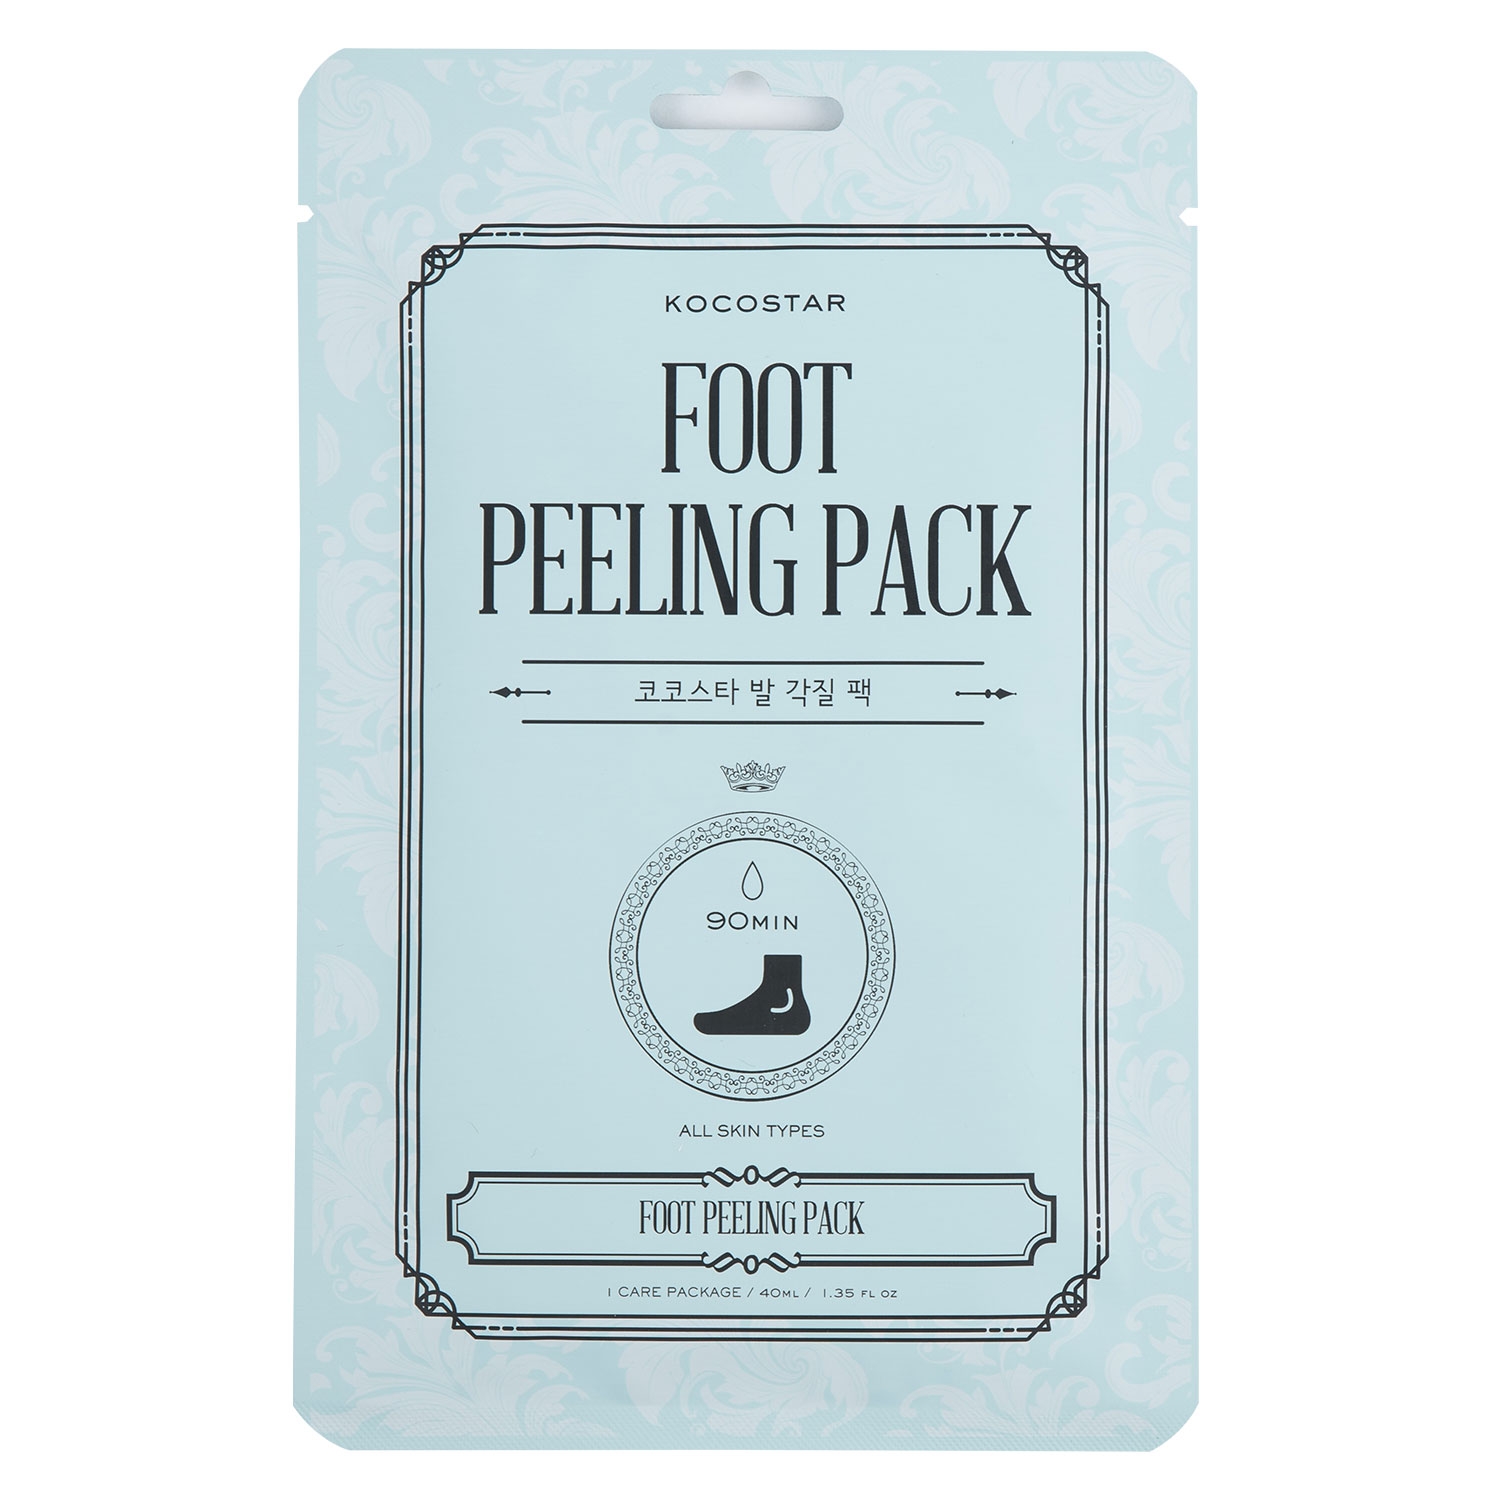 Produktbild von Kocostar - Foot Peeling Pack